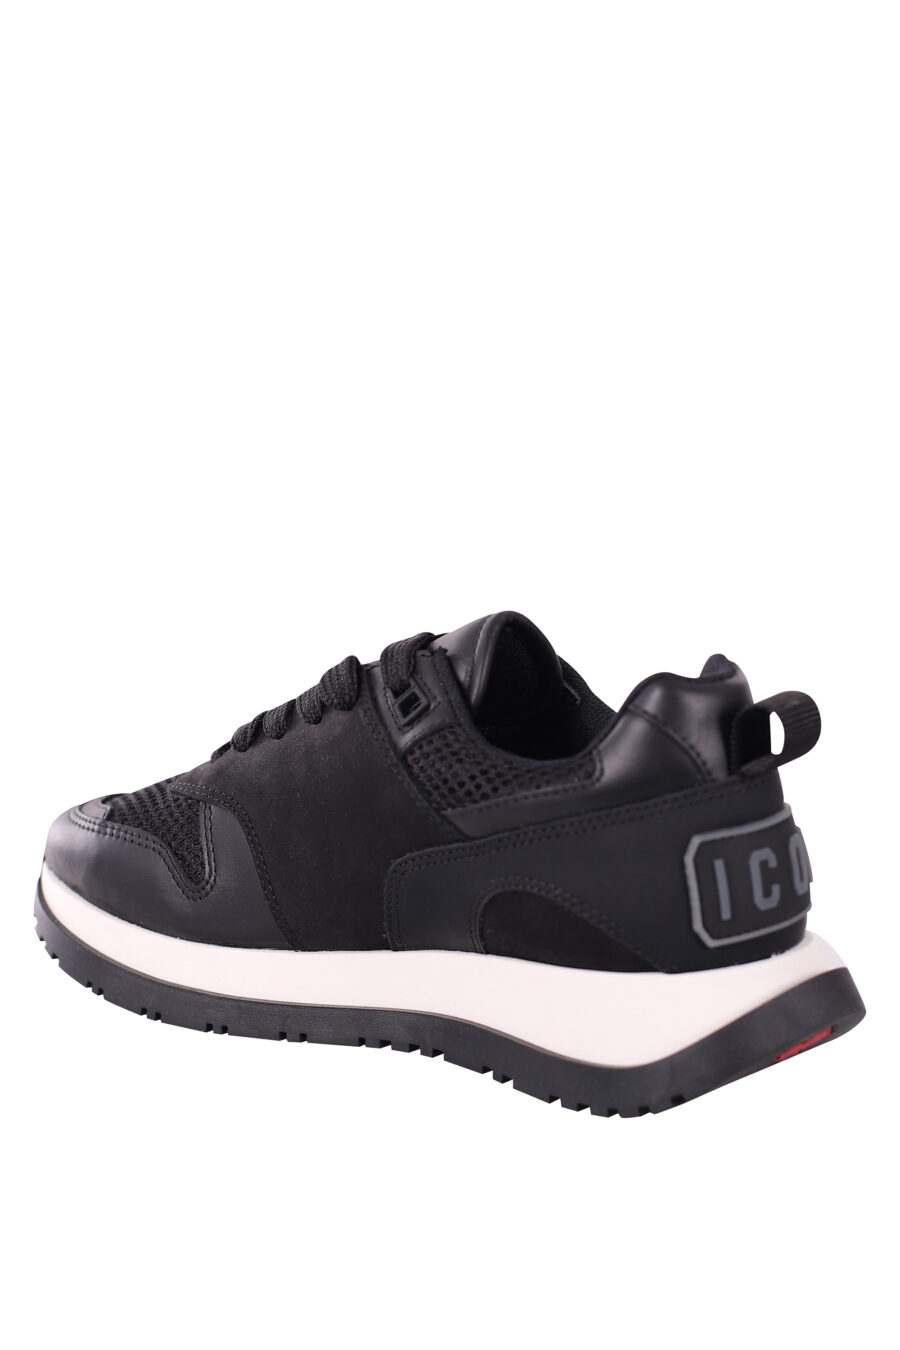 Zapatillas negras con logo en suela gris - IMG 5755